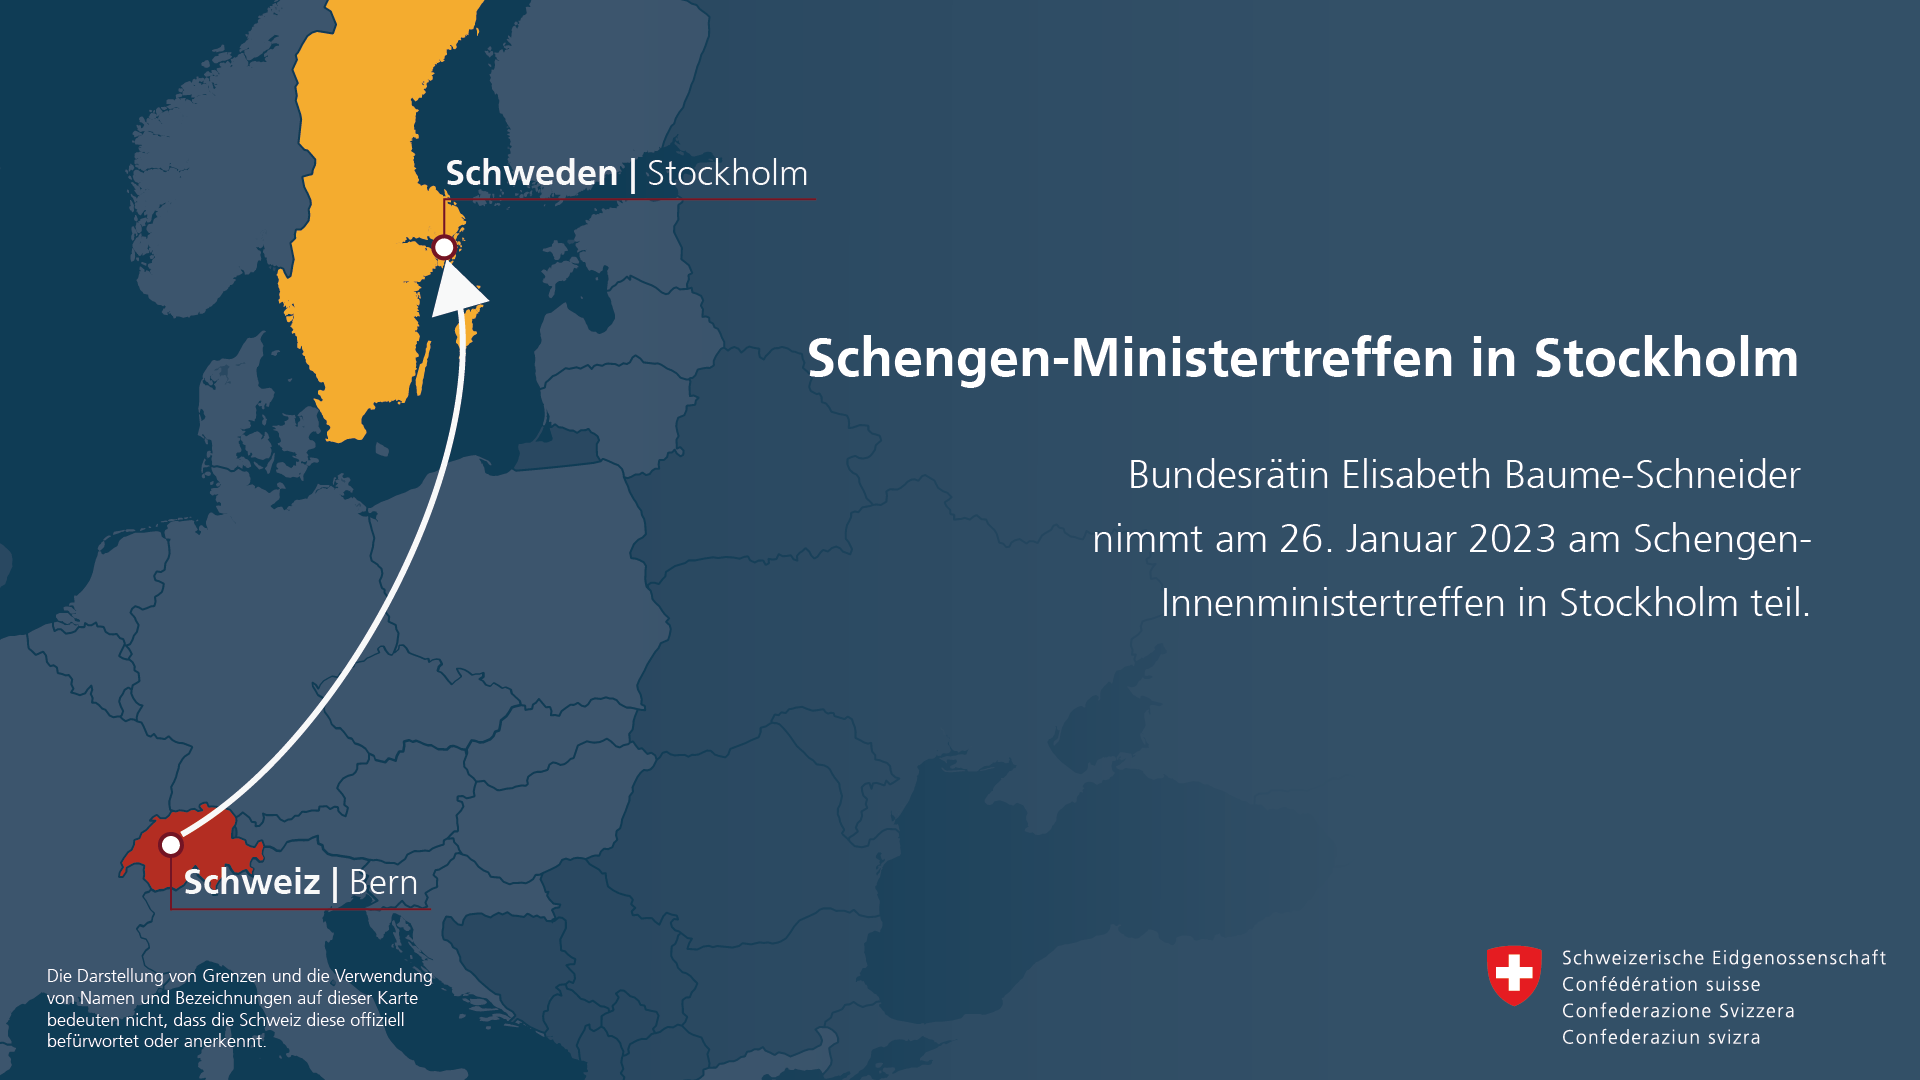 Bundesrätin Elisabeth Baume-Schneider nimmt am 26. Januar 2023 am Schengen-Innenministertreffen in Stockholm teil.